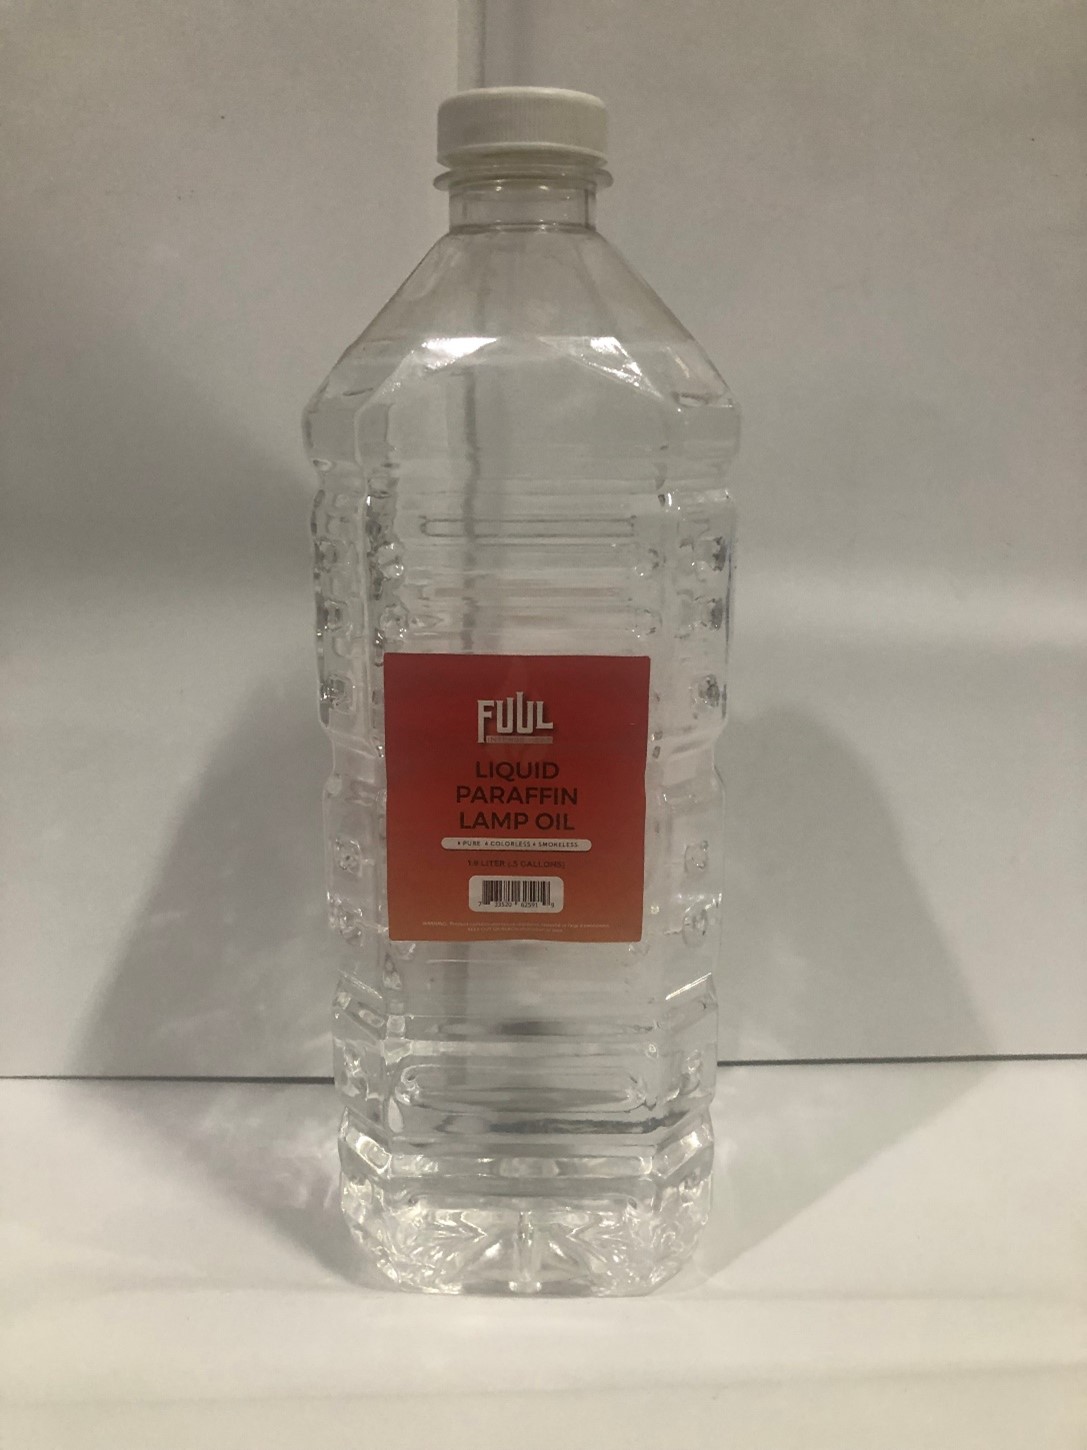 FUUL 1.9L Pure Liquid Paraffin Lamp Oil